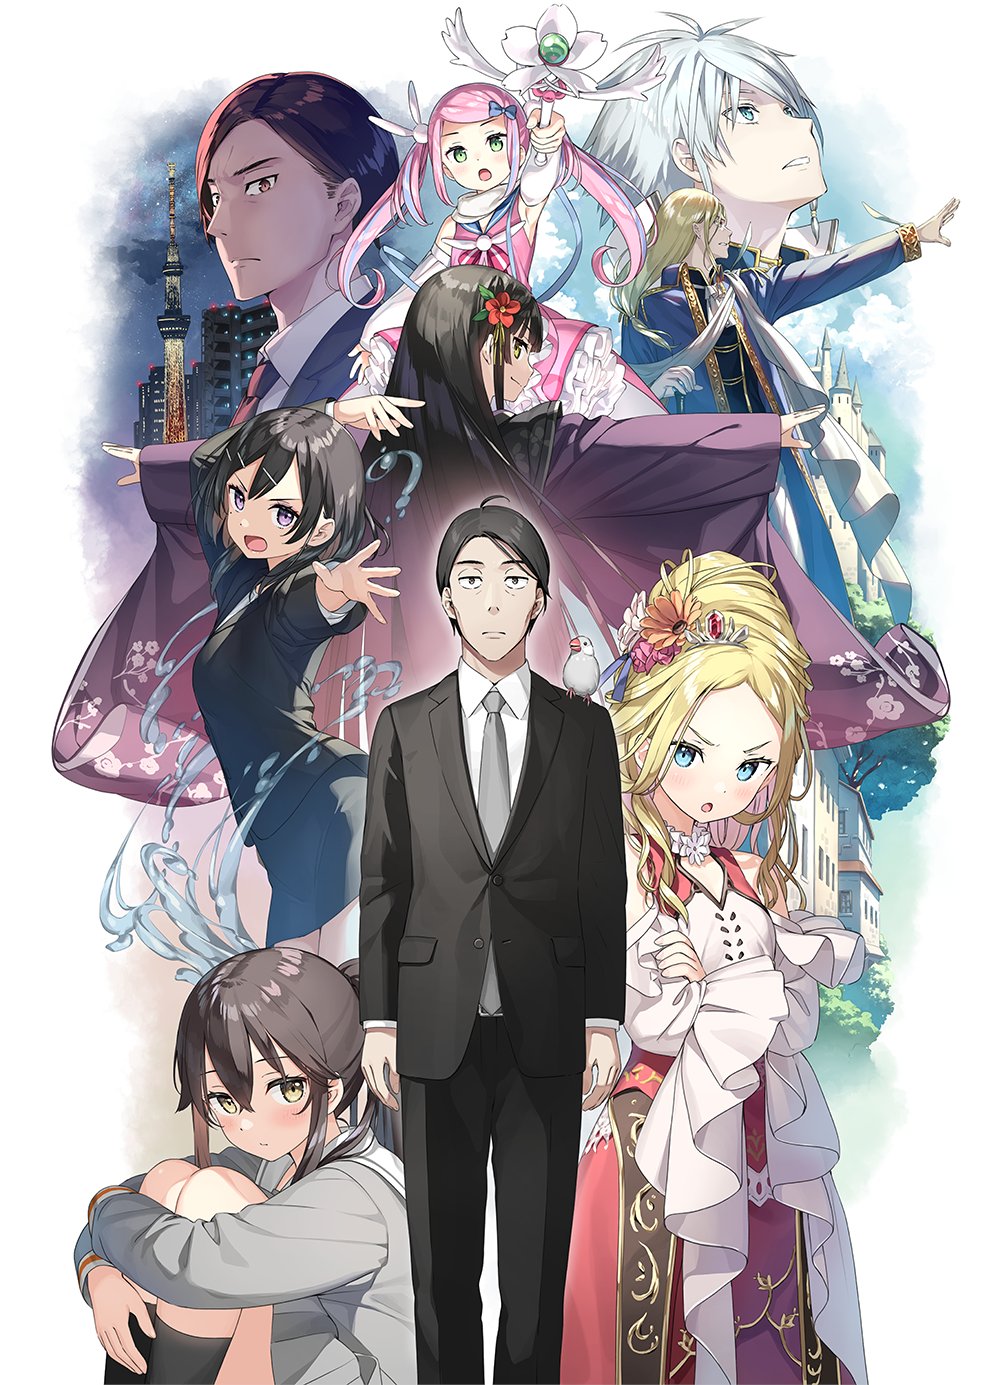 Light Novel Sasaki and Peeps Gets a TV Anime Adaptation - Anime Corner